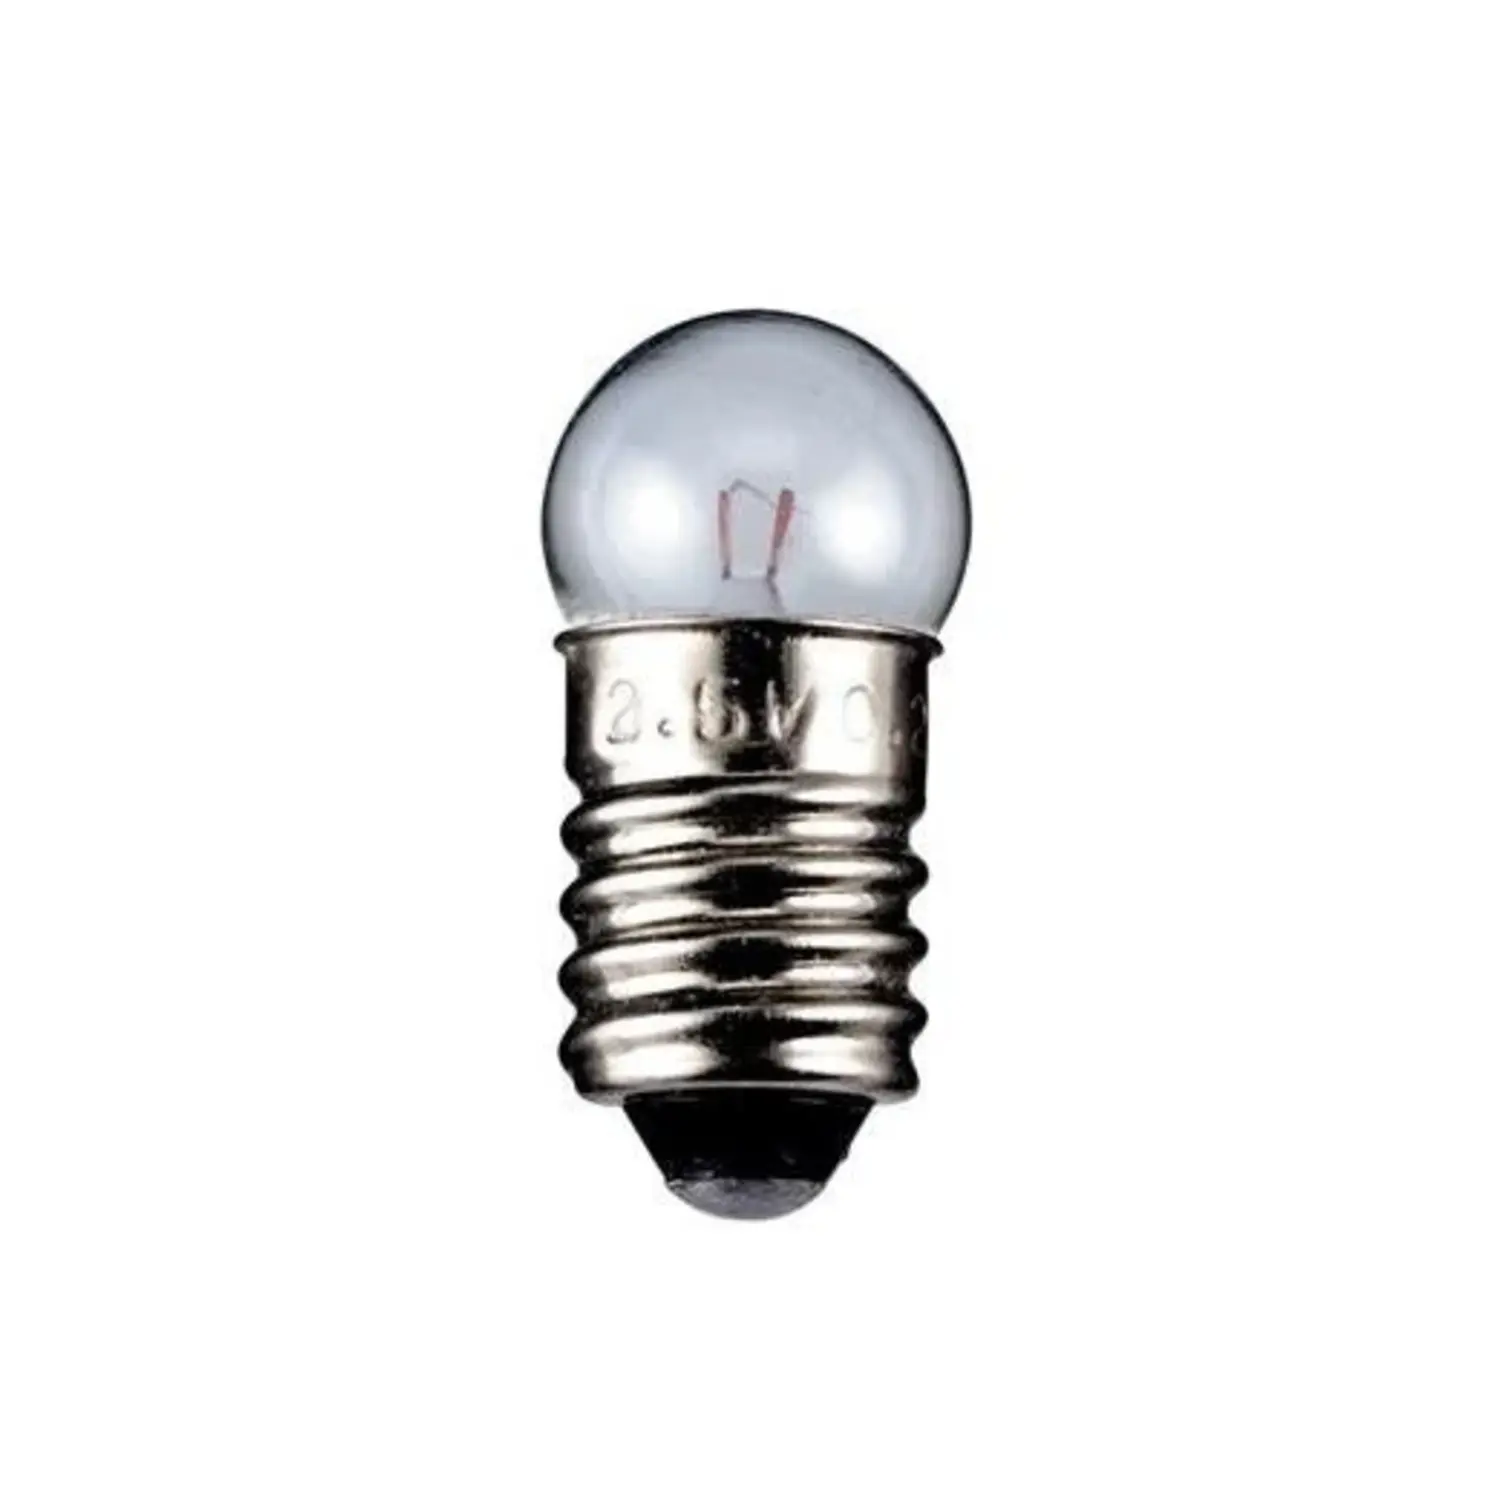 immagine del prodotto lampadina globulare chiara 2,5 volt trasparente E10 CE 0,70 watt wnt 9322